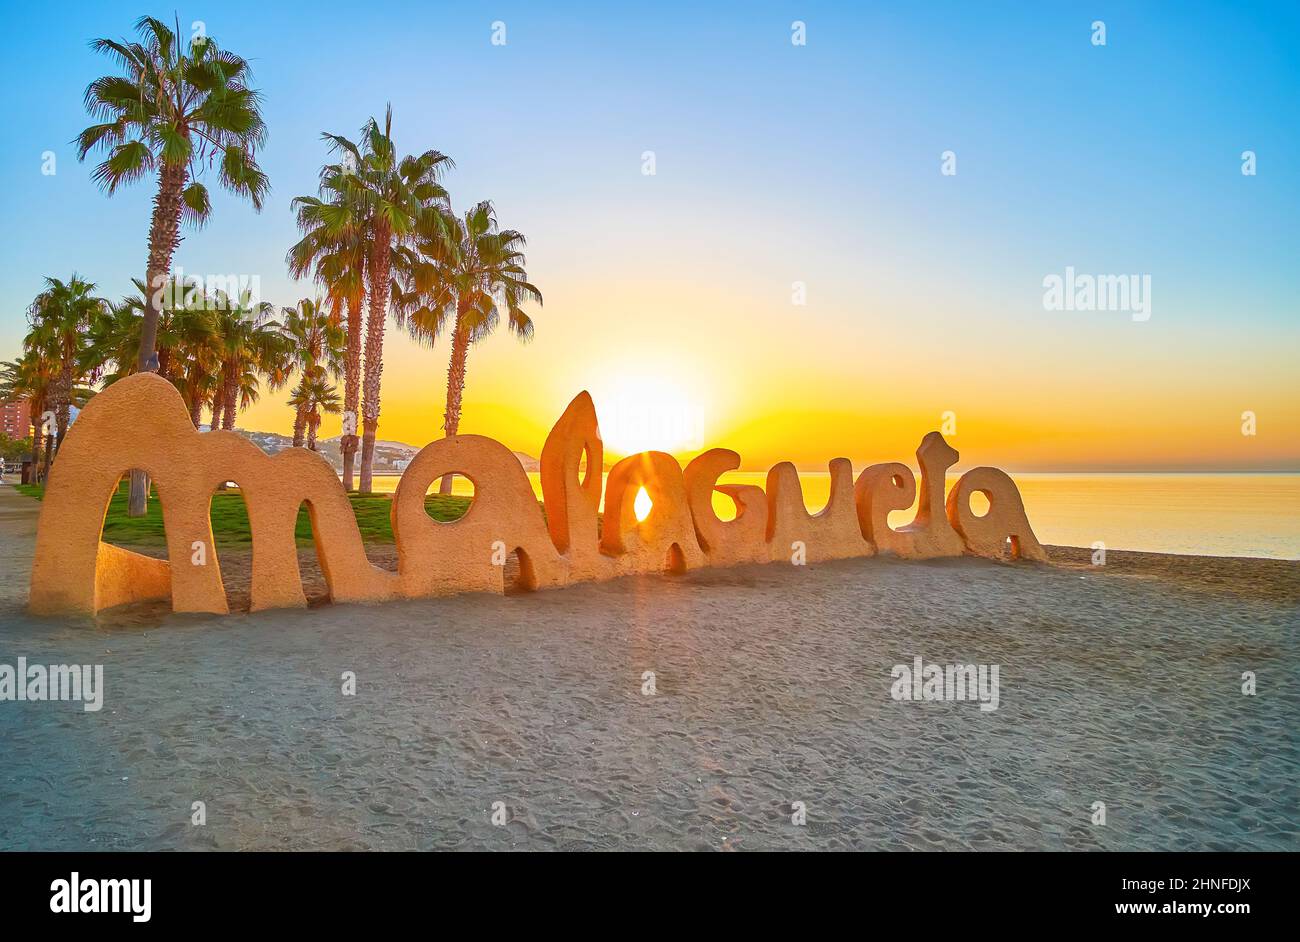 MALAGA, ESPAGNE - 28 SEPTEMBRE 2019 : le soleil lumineux de l'aube brille à  travers le signe Malmetagueta sur la plage de sable avec de grands palmiers  et la mer dorée Photo Stock - Alamy